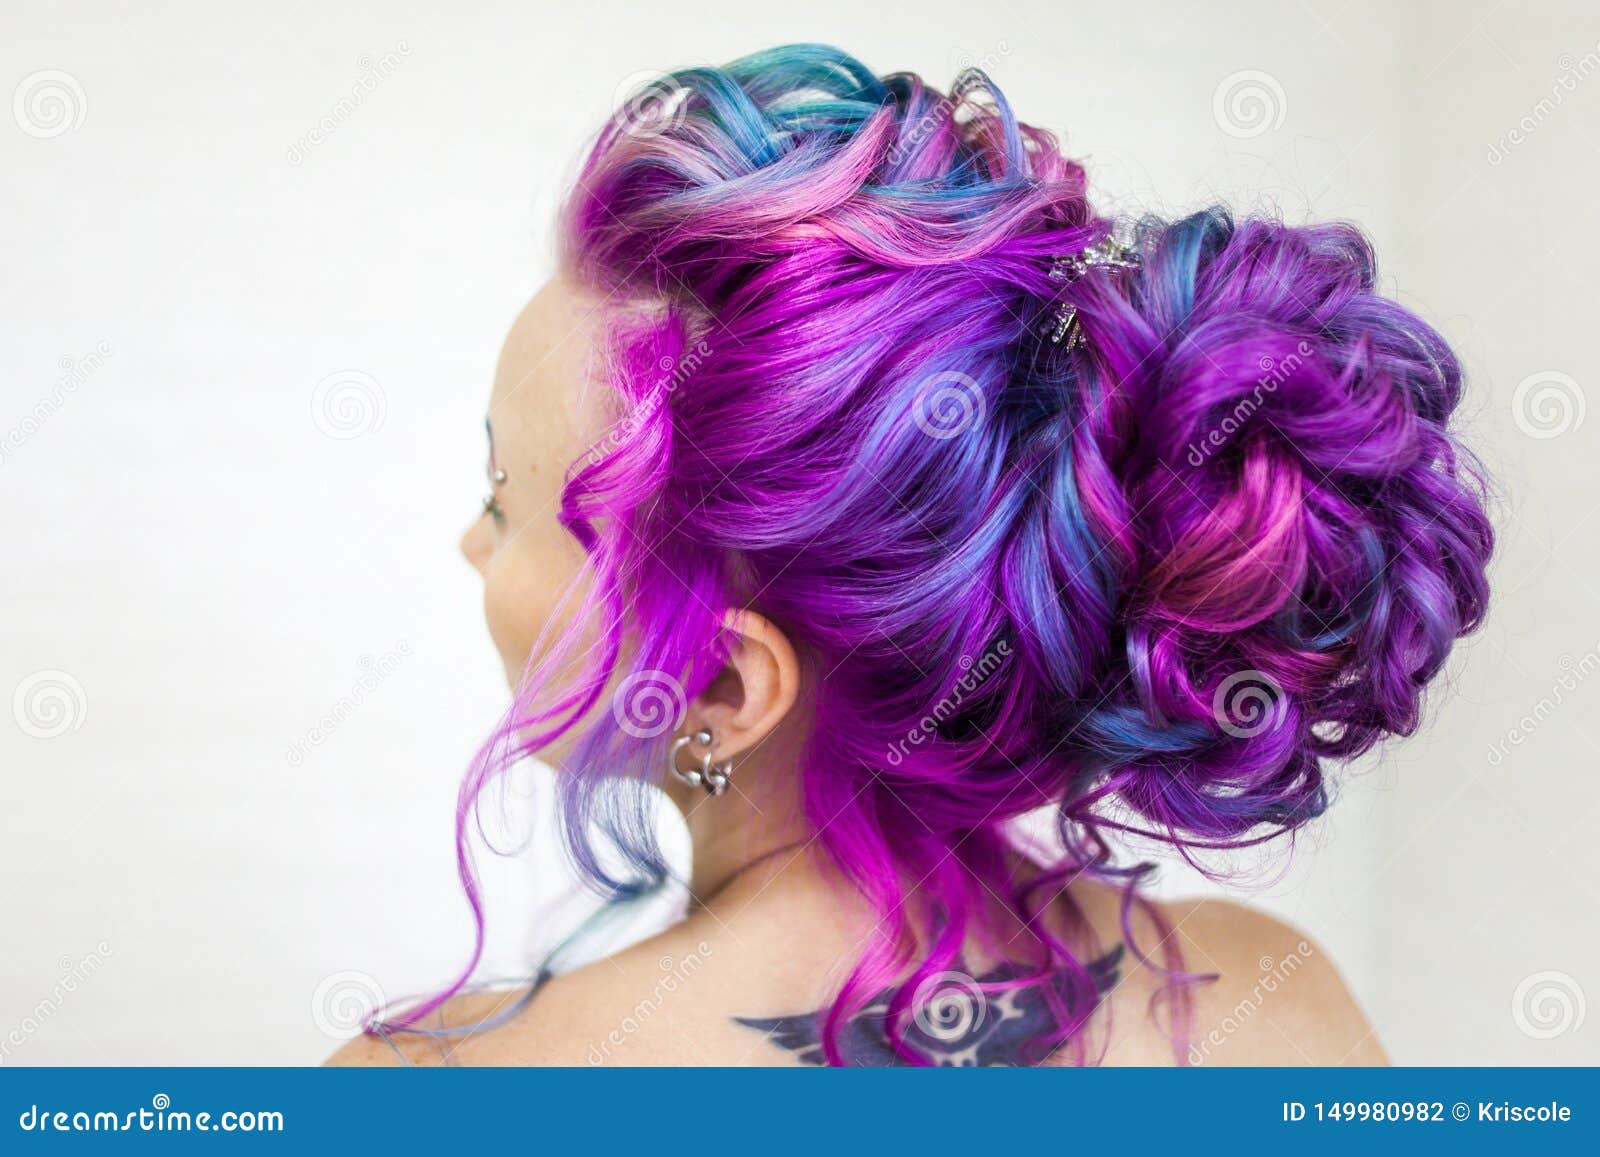 gradient hair color blue